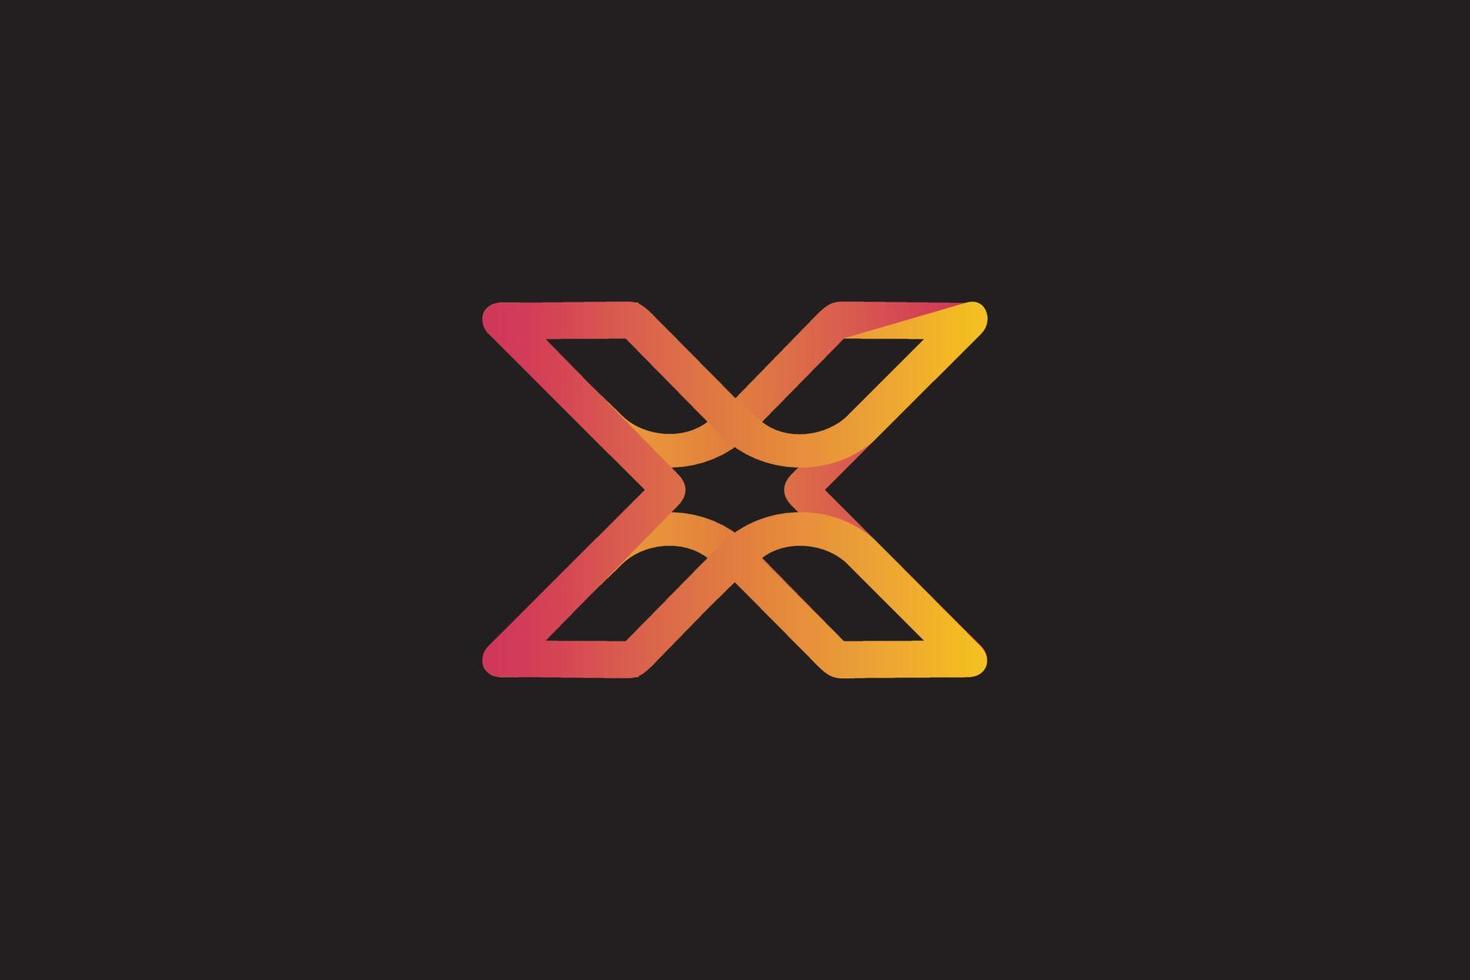 graphique vectoriel de la lettre x, technologie, simple, moderne, création de logo dégradé orange